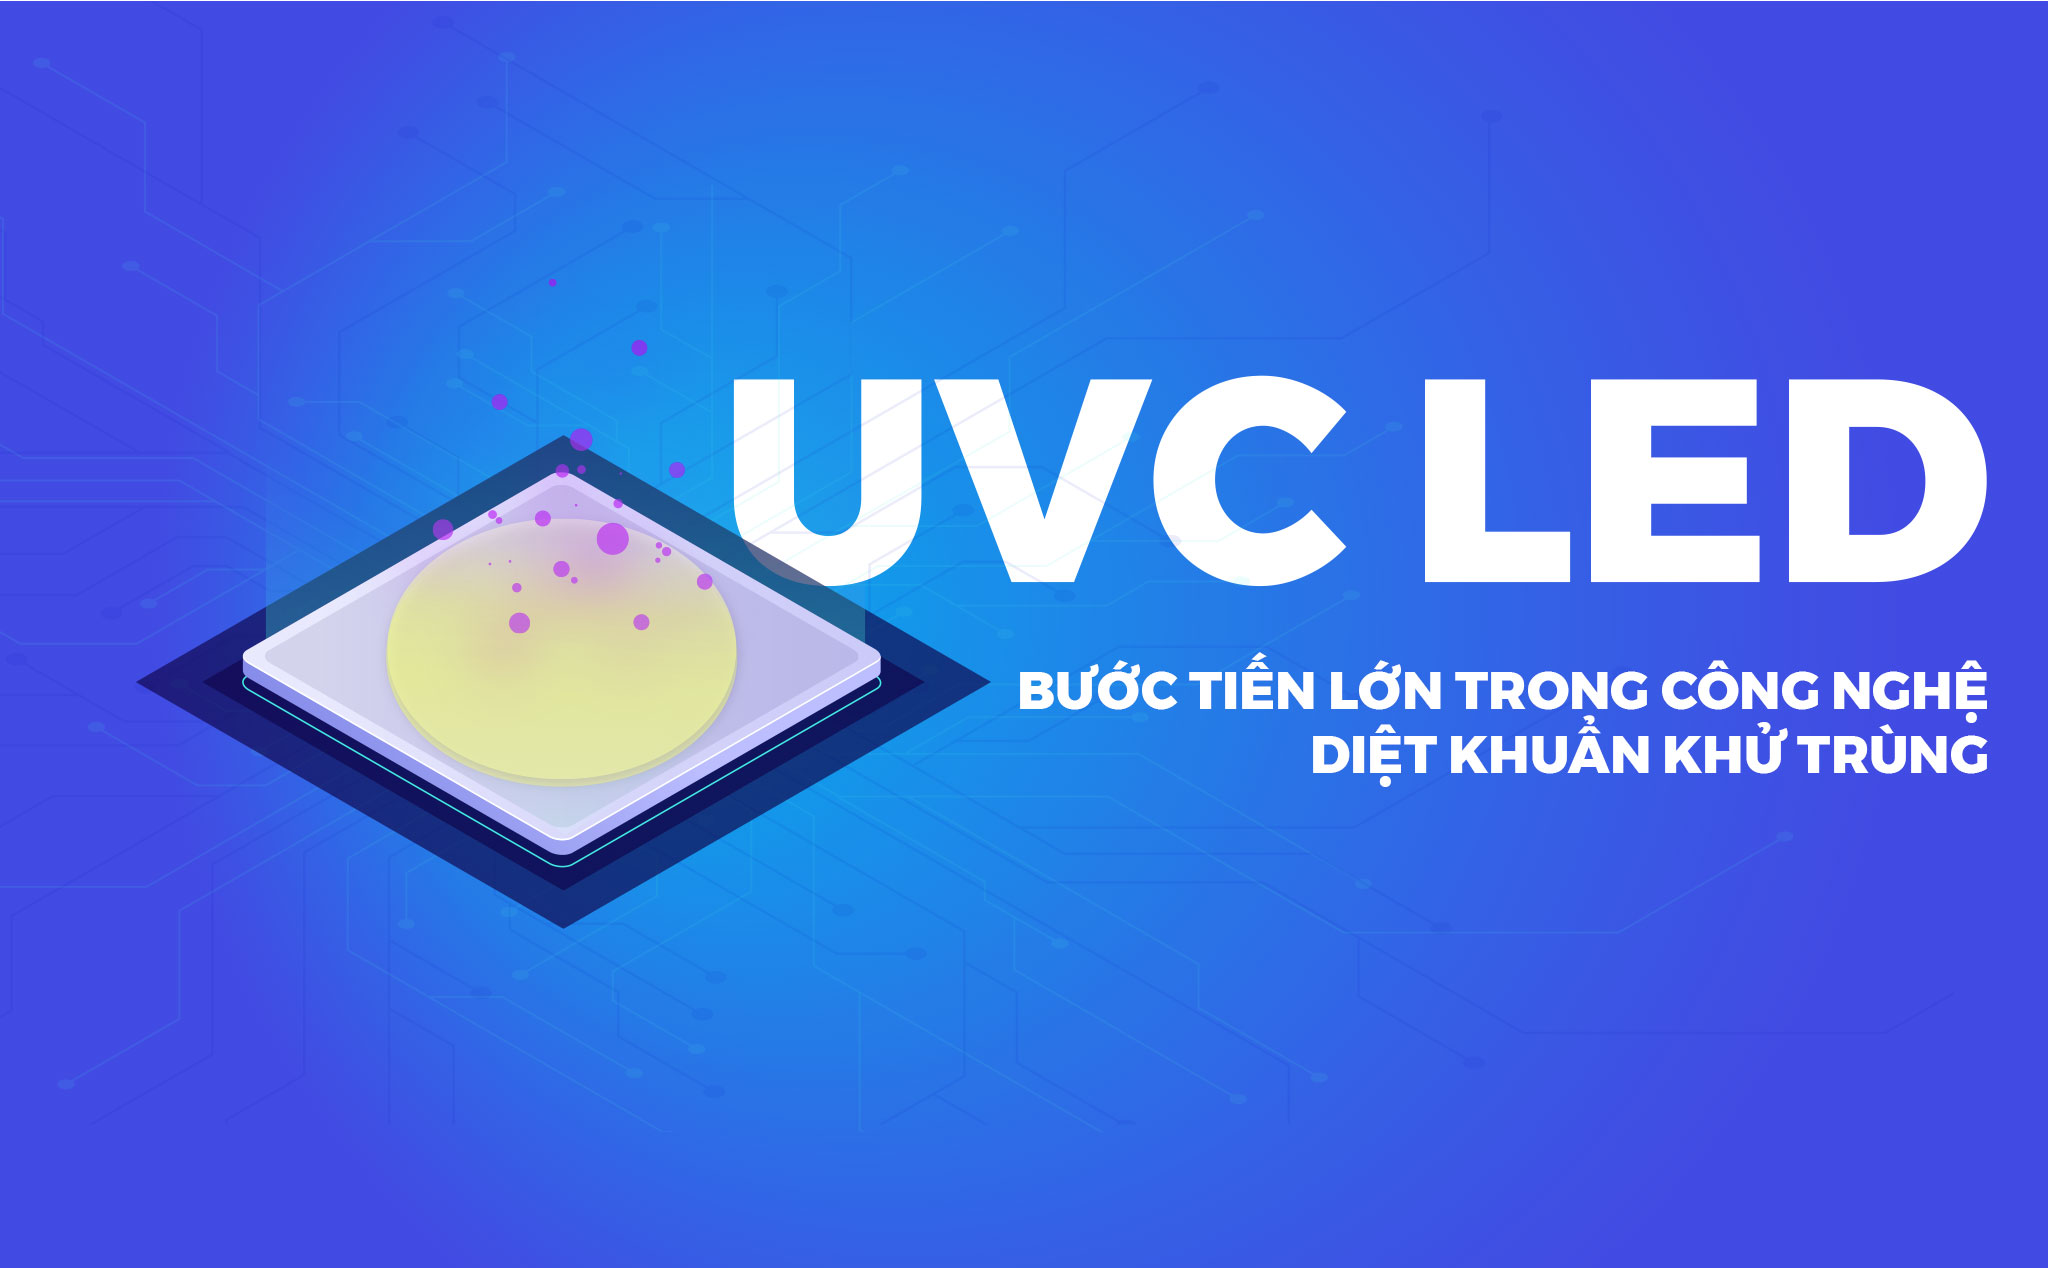 UVC LED - Công nghệ đột phá trong các sản phẩm diệt khuẩn gia dụng